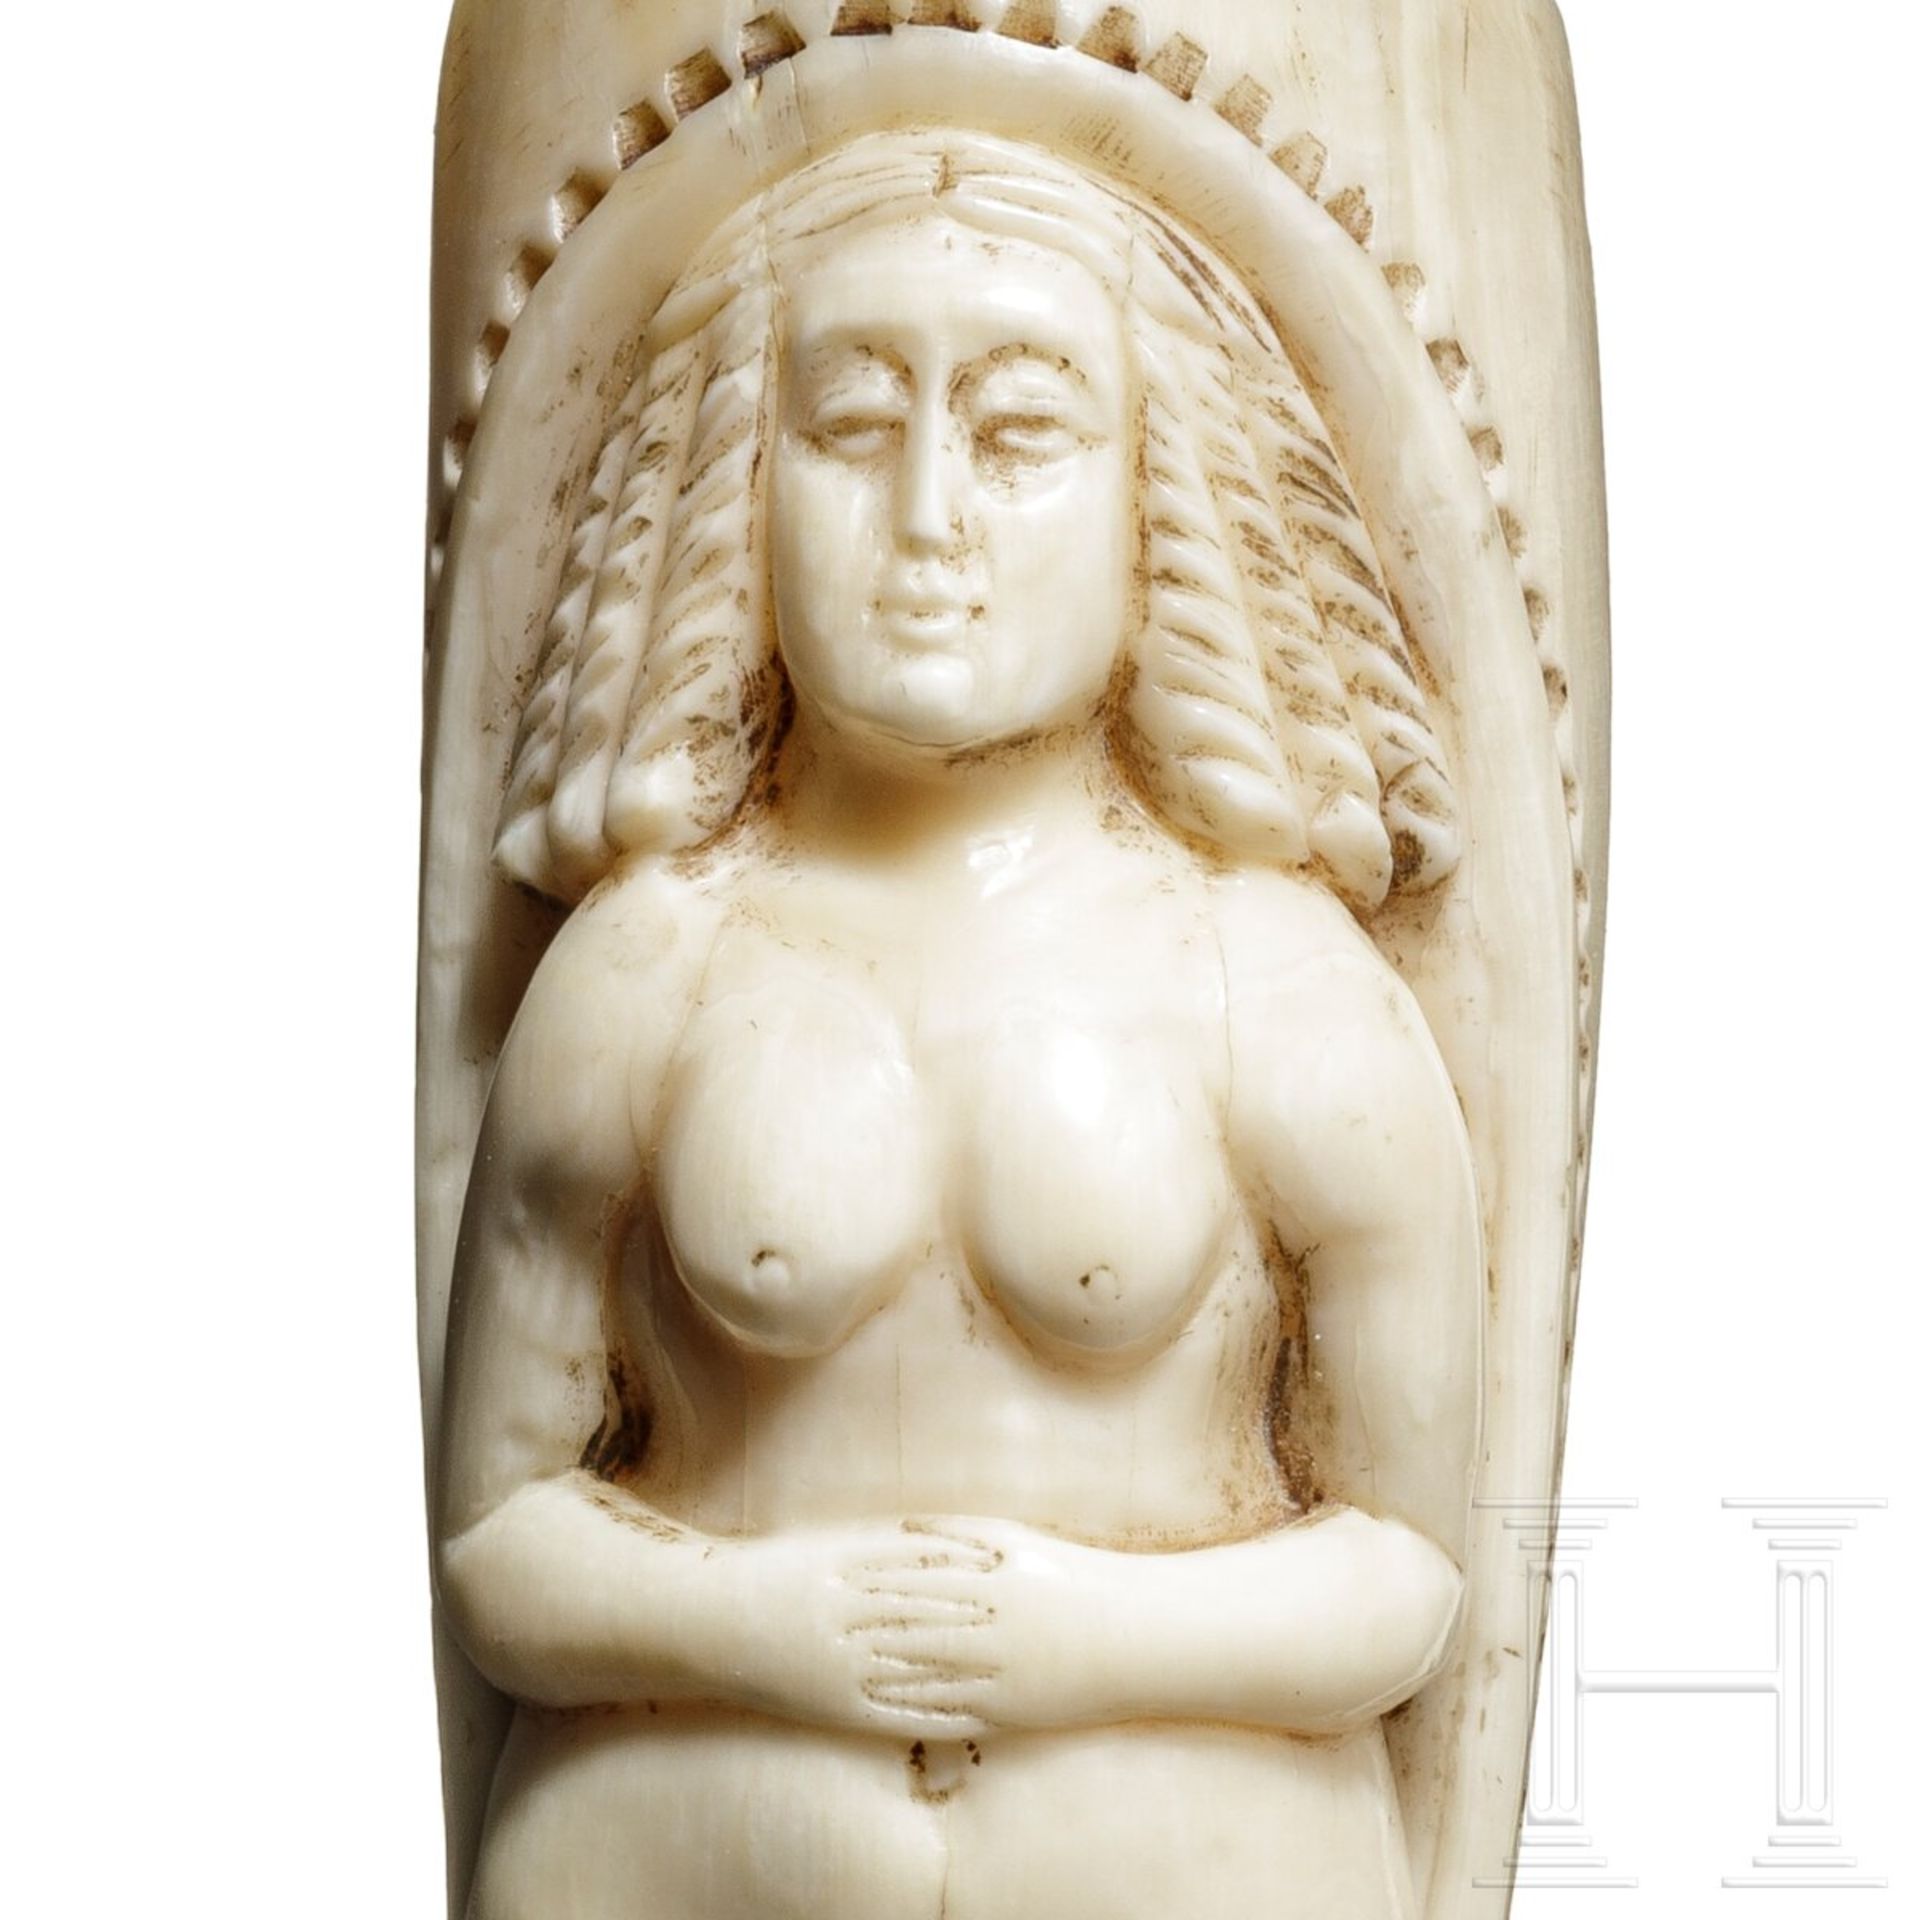 Griff eines Gehstockes mit erotischer Darstellung, USA, 19. Jhdt. - Image 6 of 6